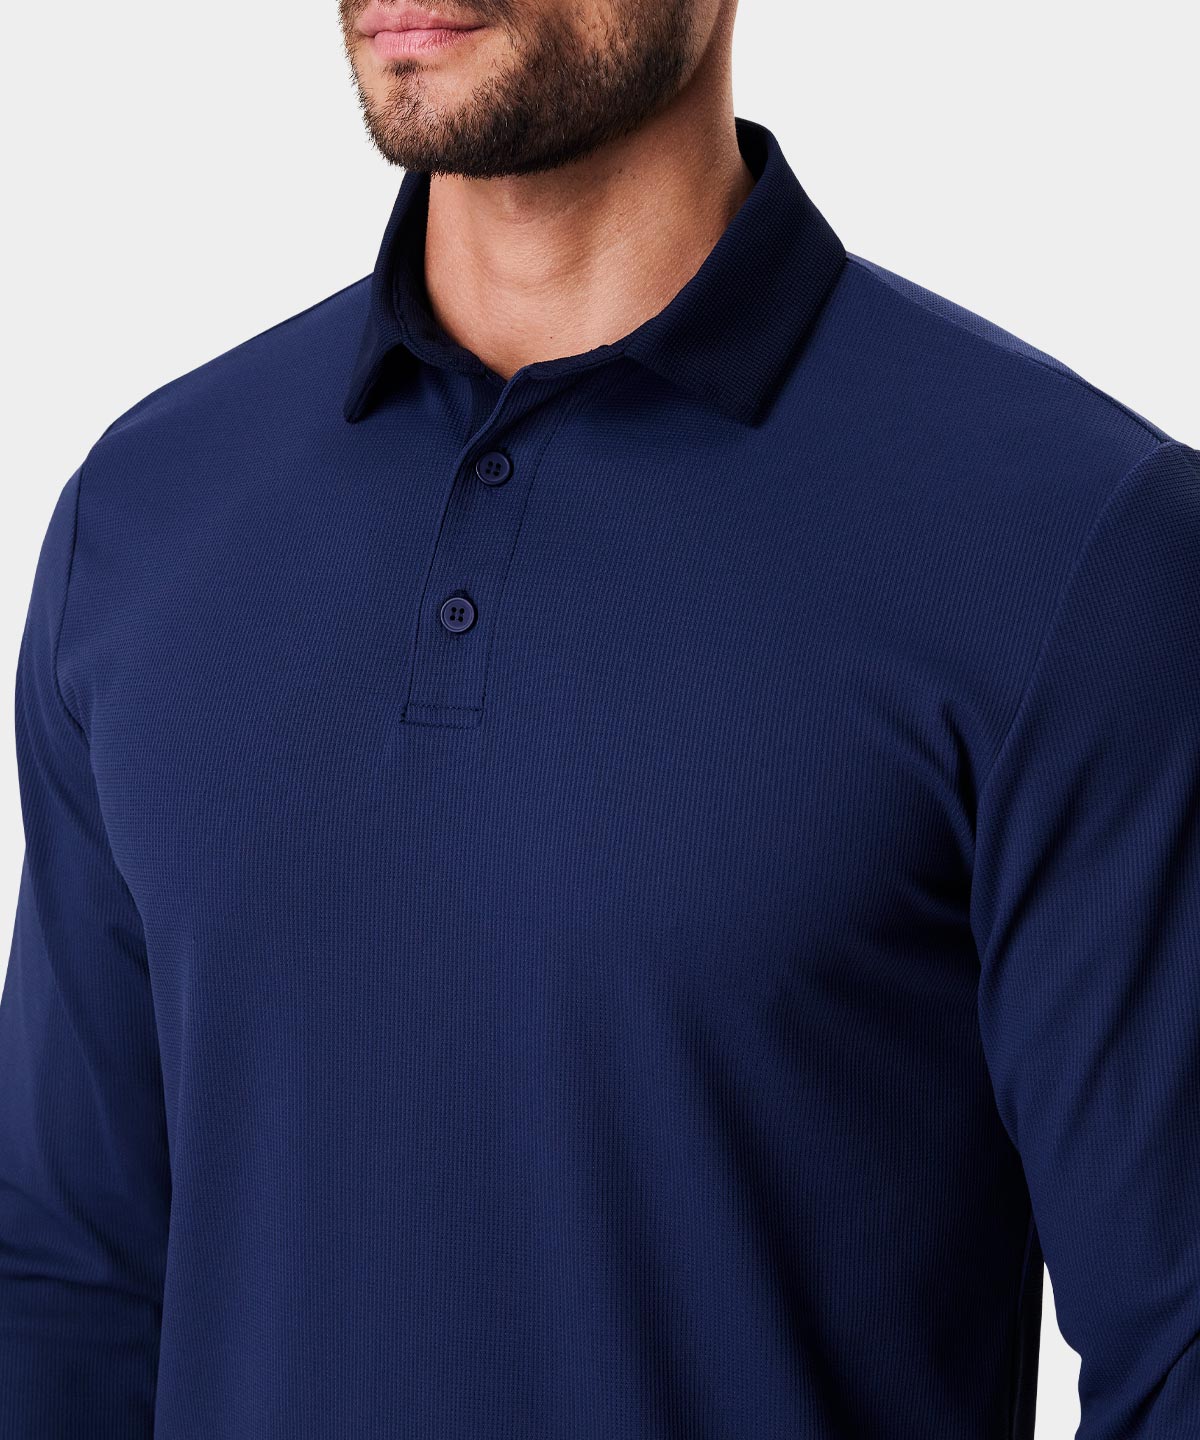 Shirt Polo Sleeve Navy – Macade Long